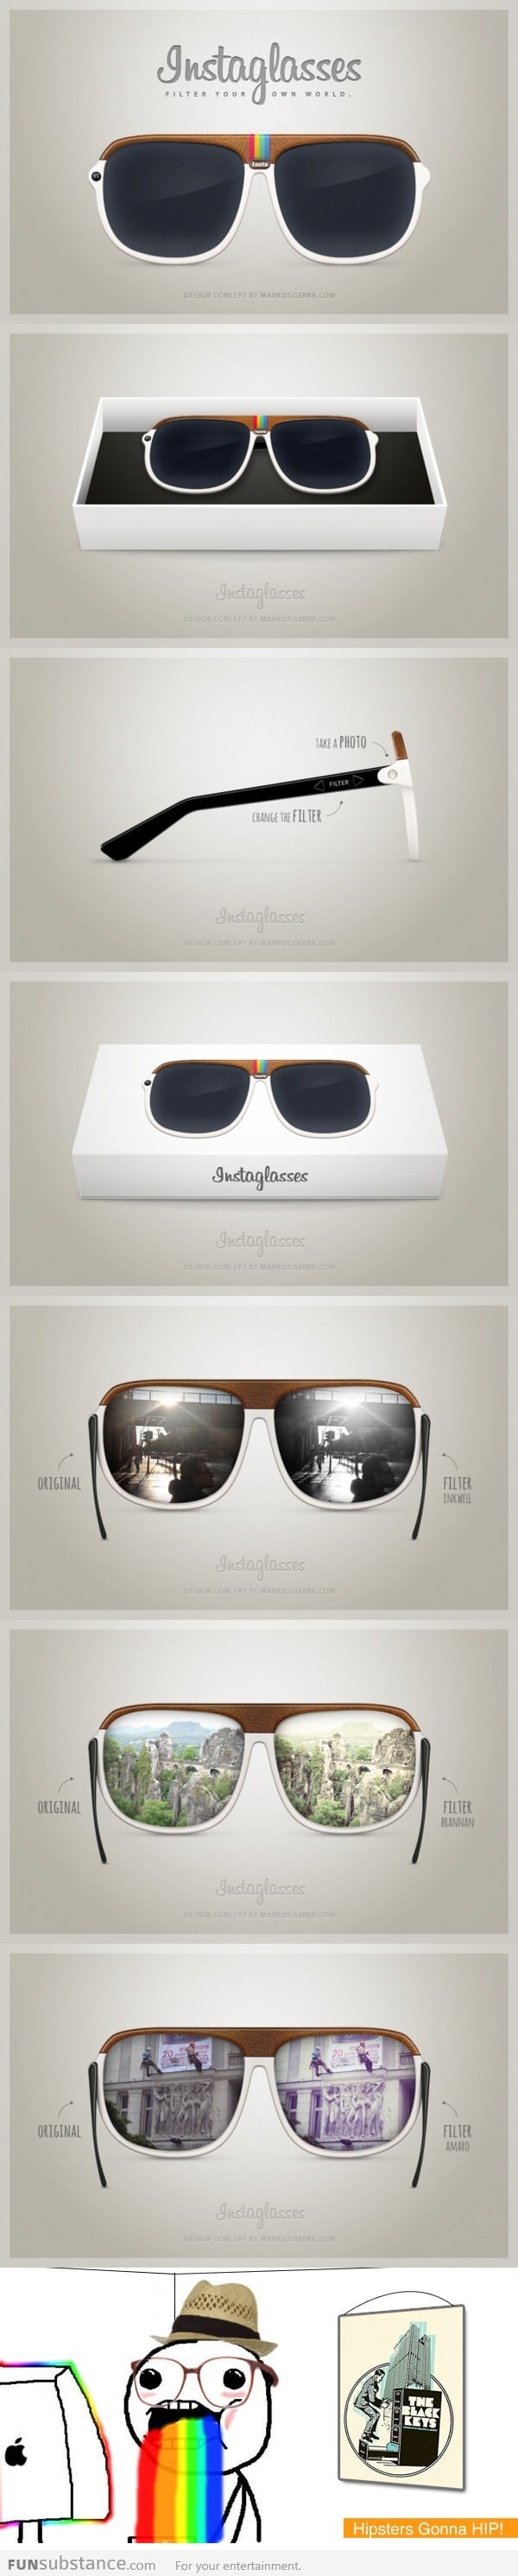 Instaglasses - Instagram Sunglasses?!